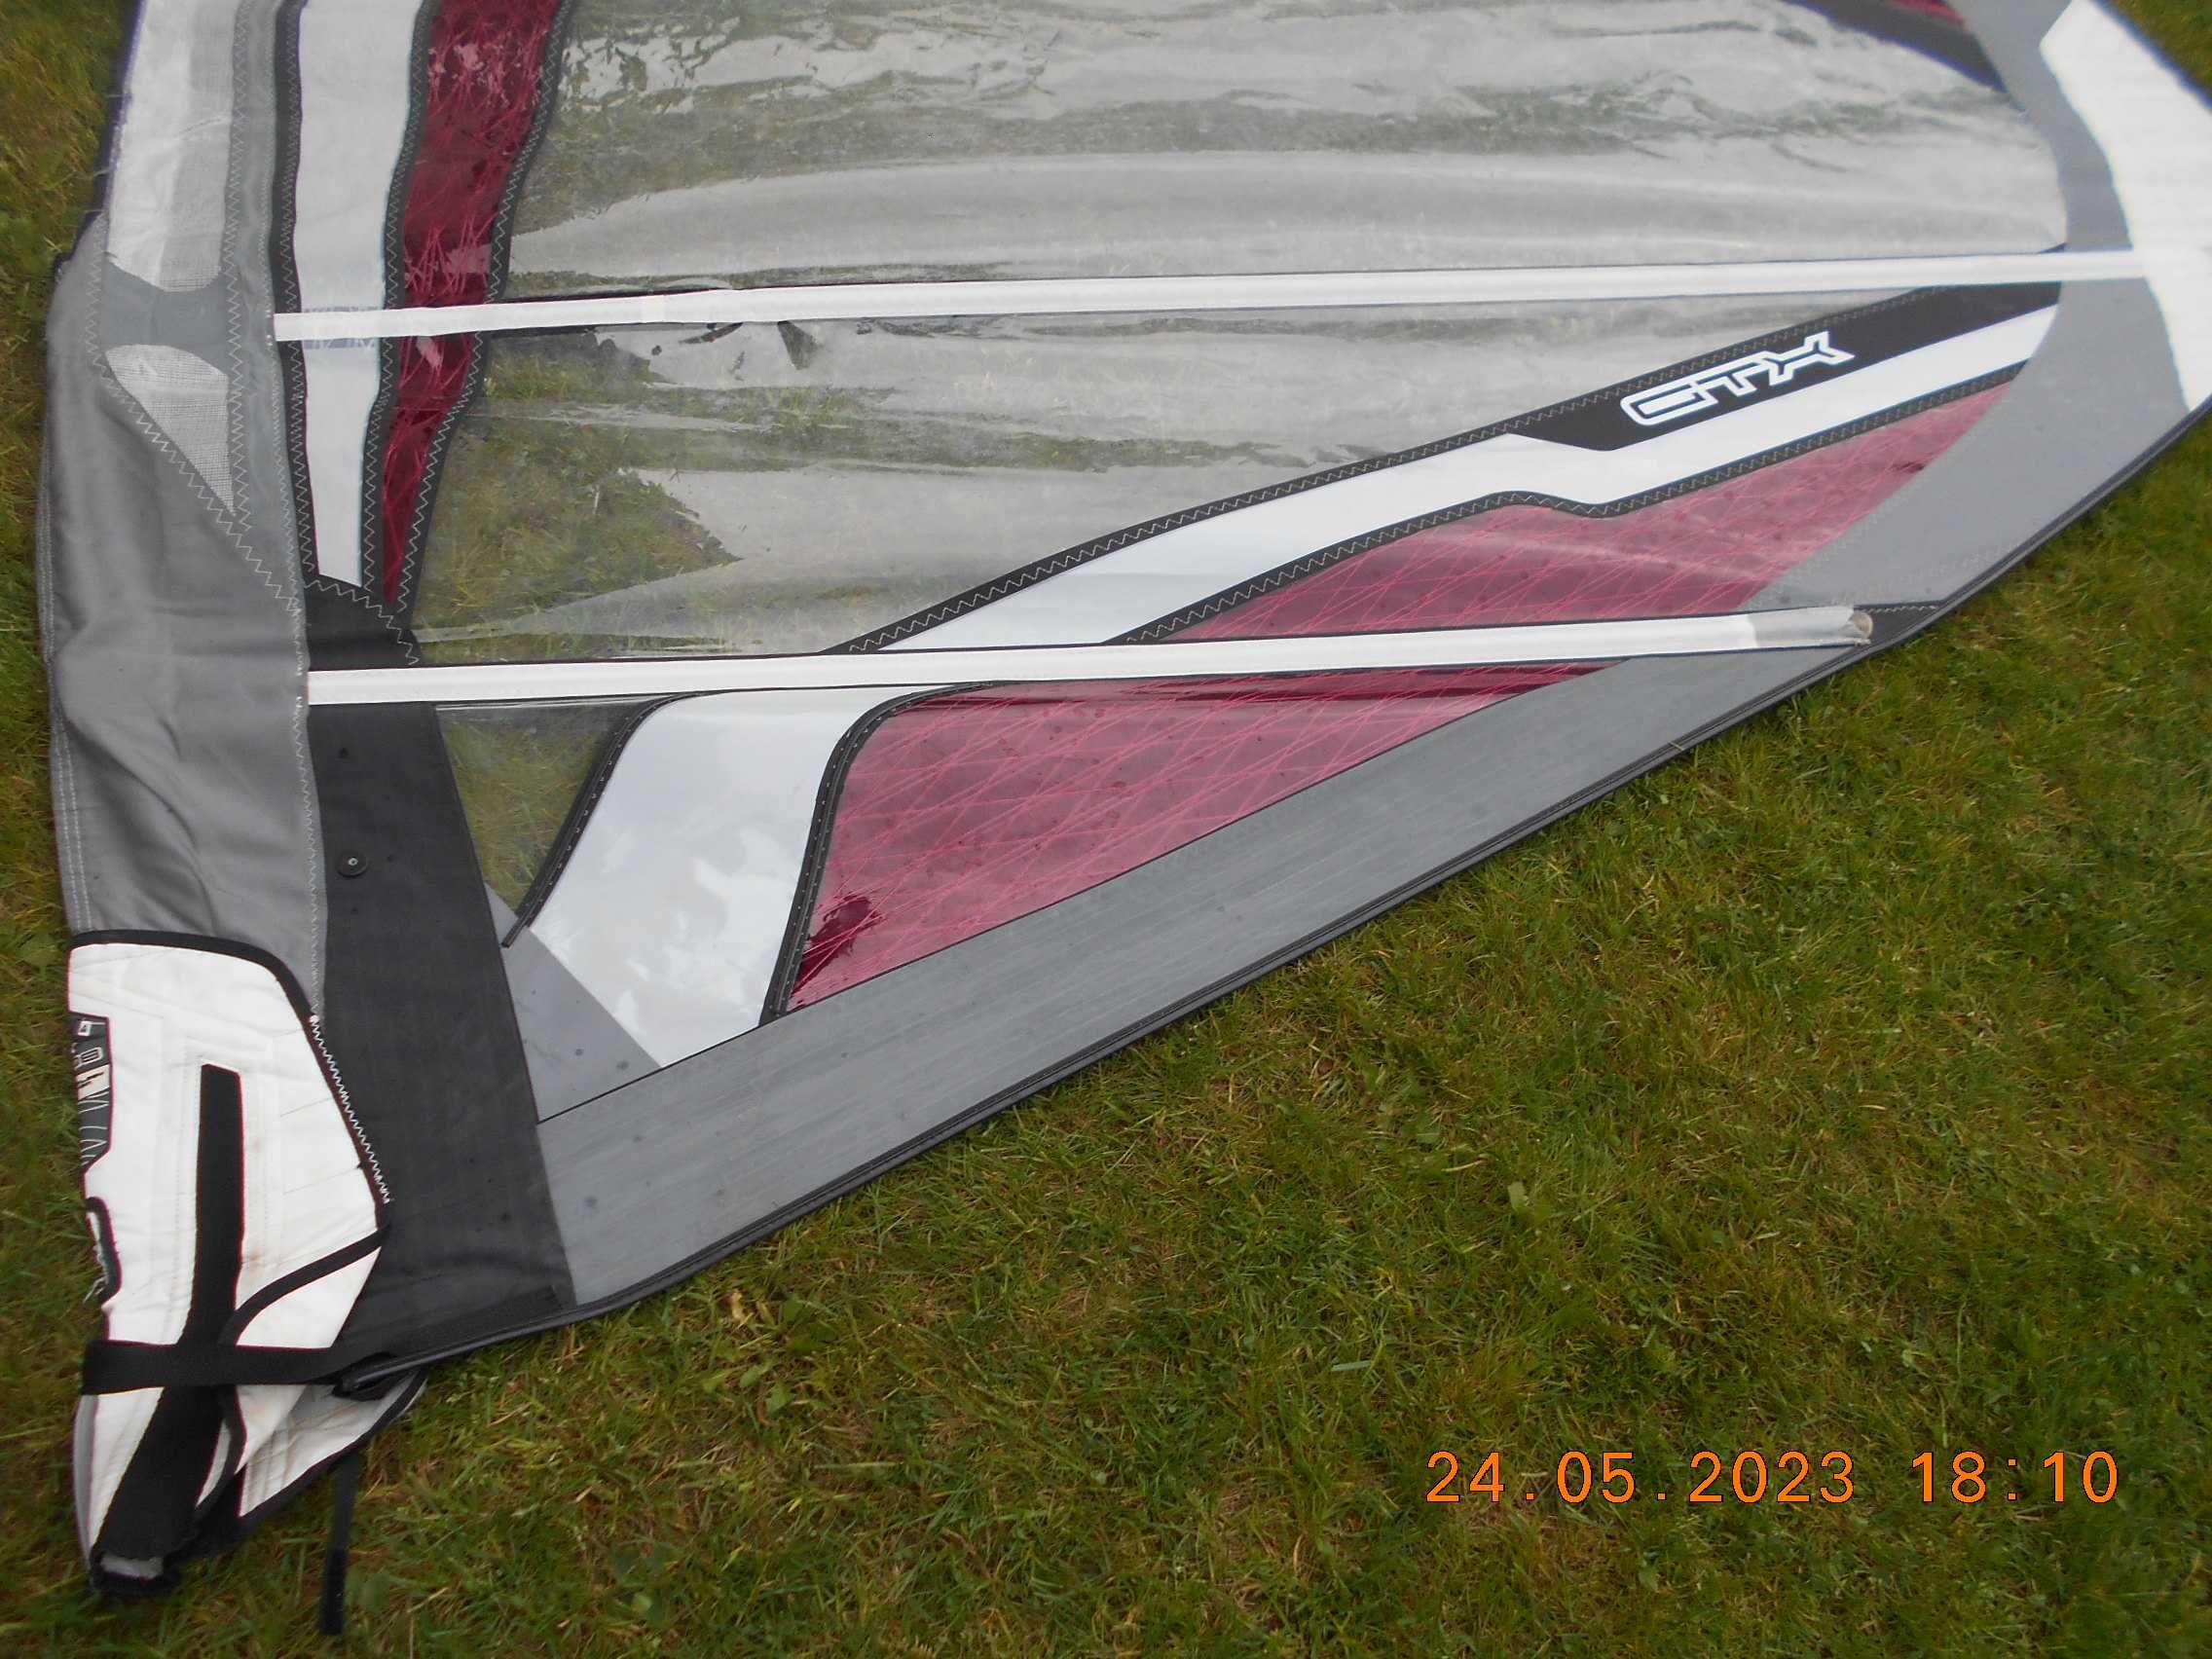 żagiel windsurfingowy firmy Gaastra GTX 9,0